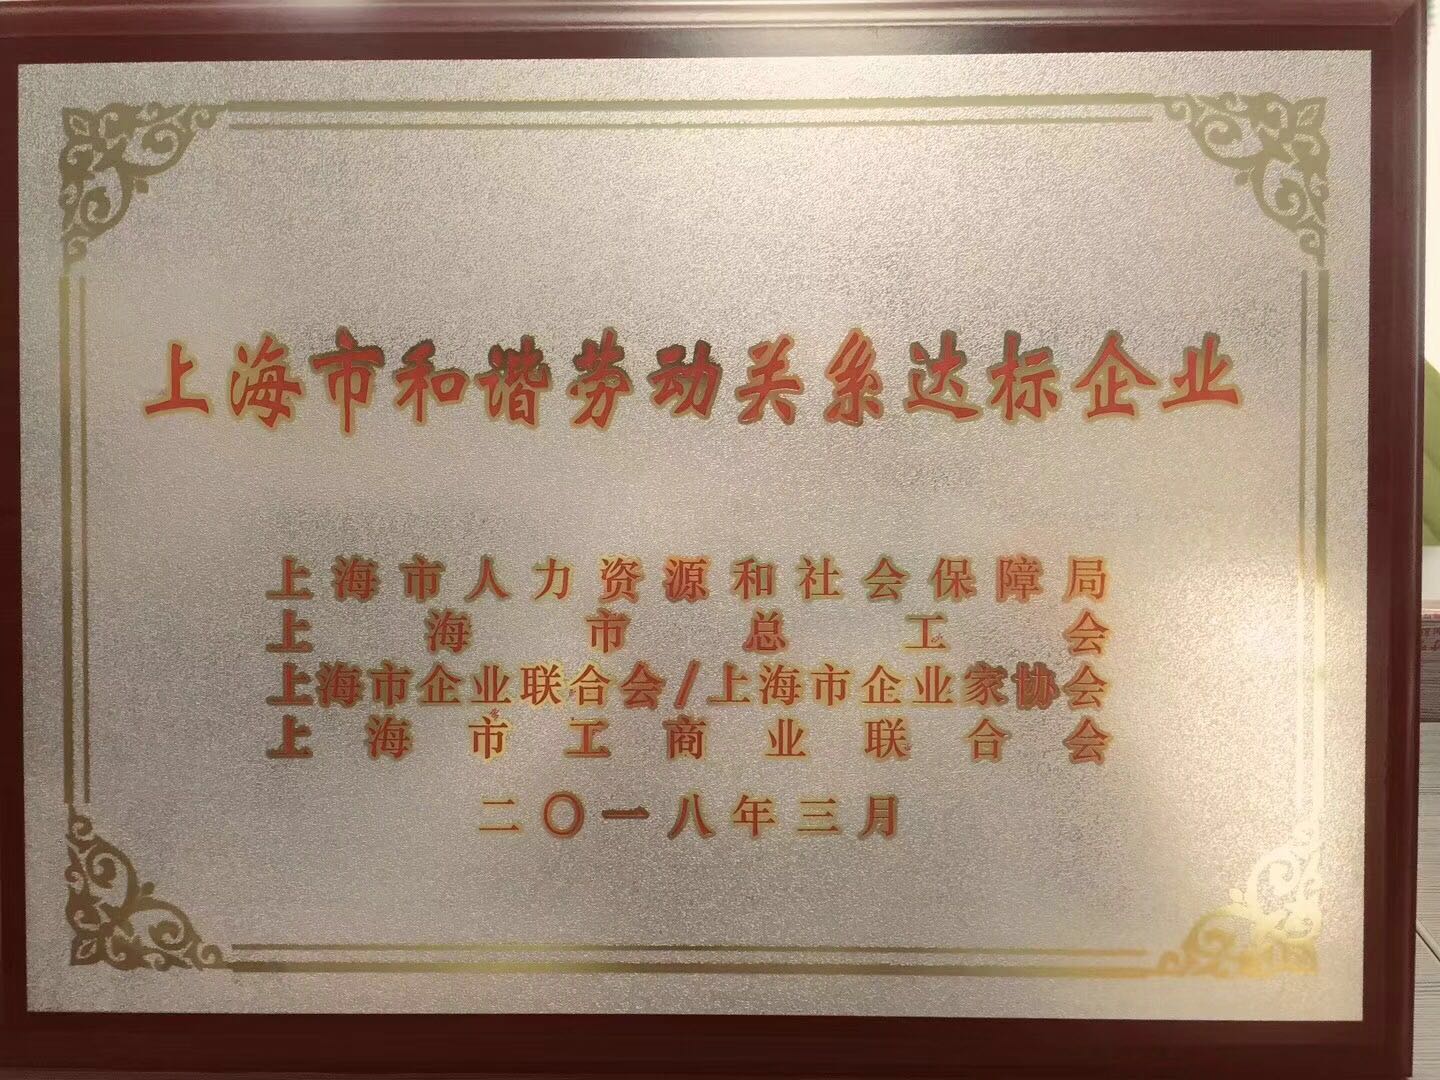 上海良时智能获“上海市和谐劳动关系达标企业”荣誉称号